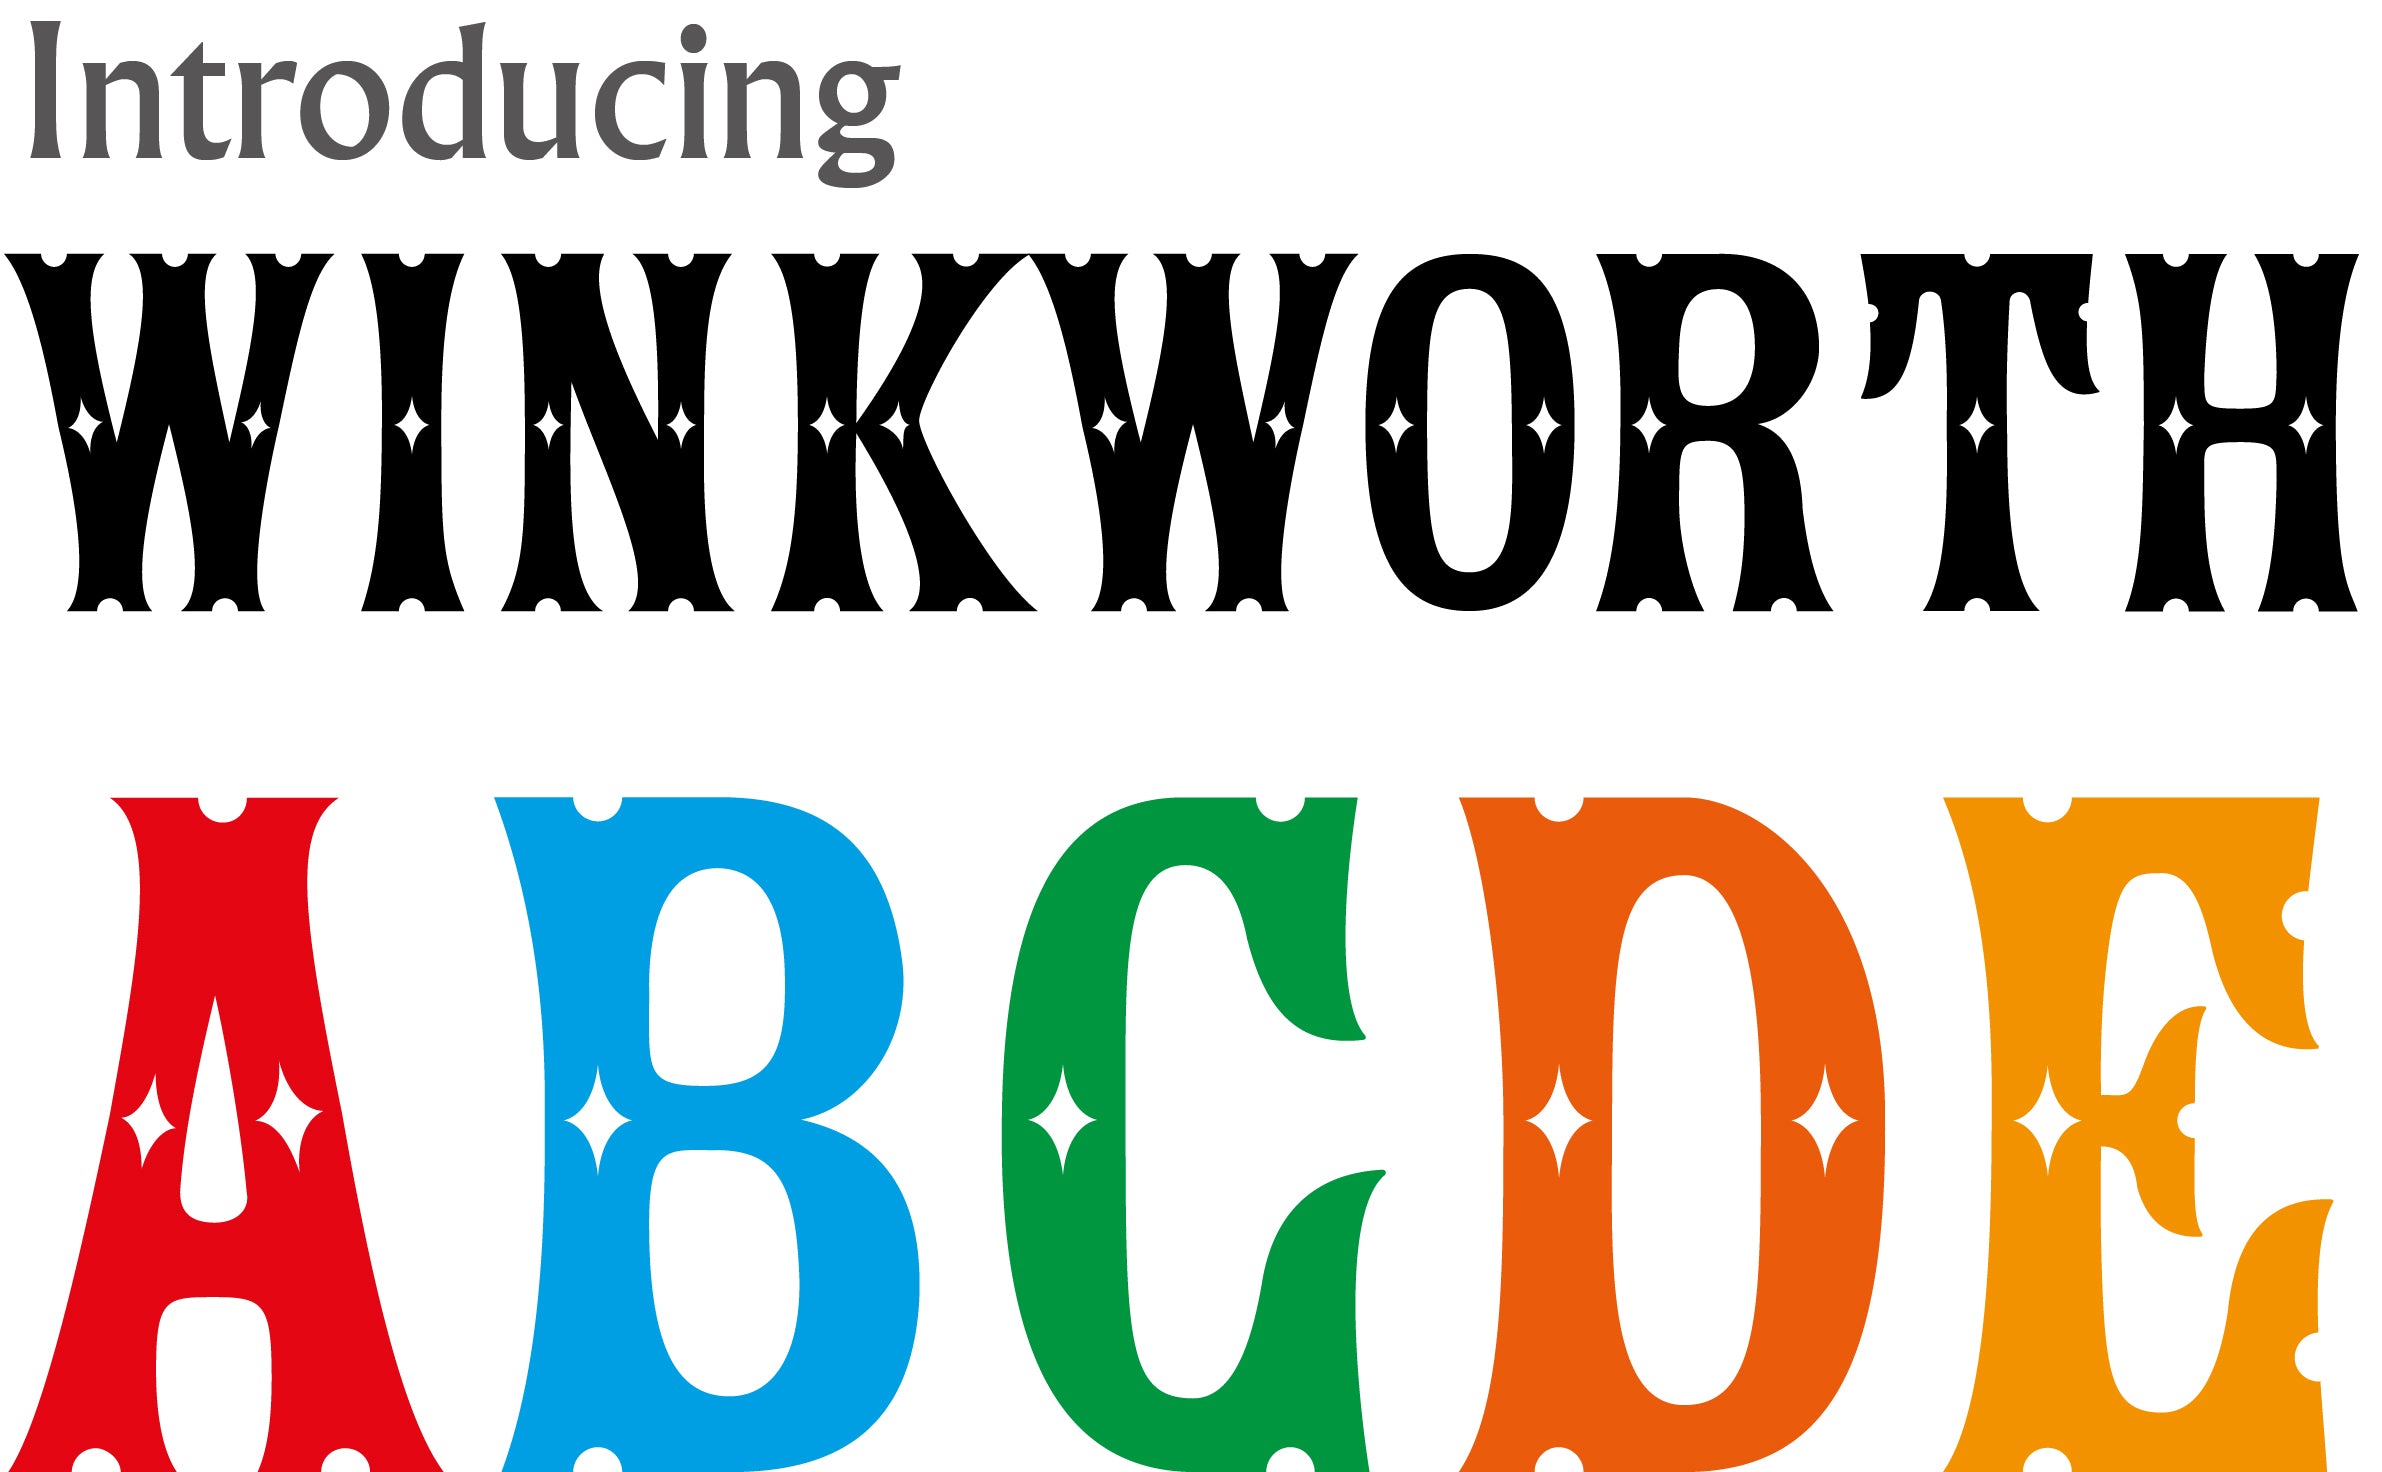 ‘Winkworth' Letterpress woodtype typeface